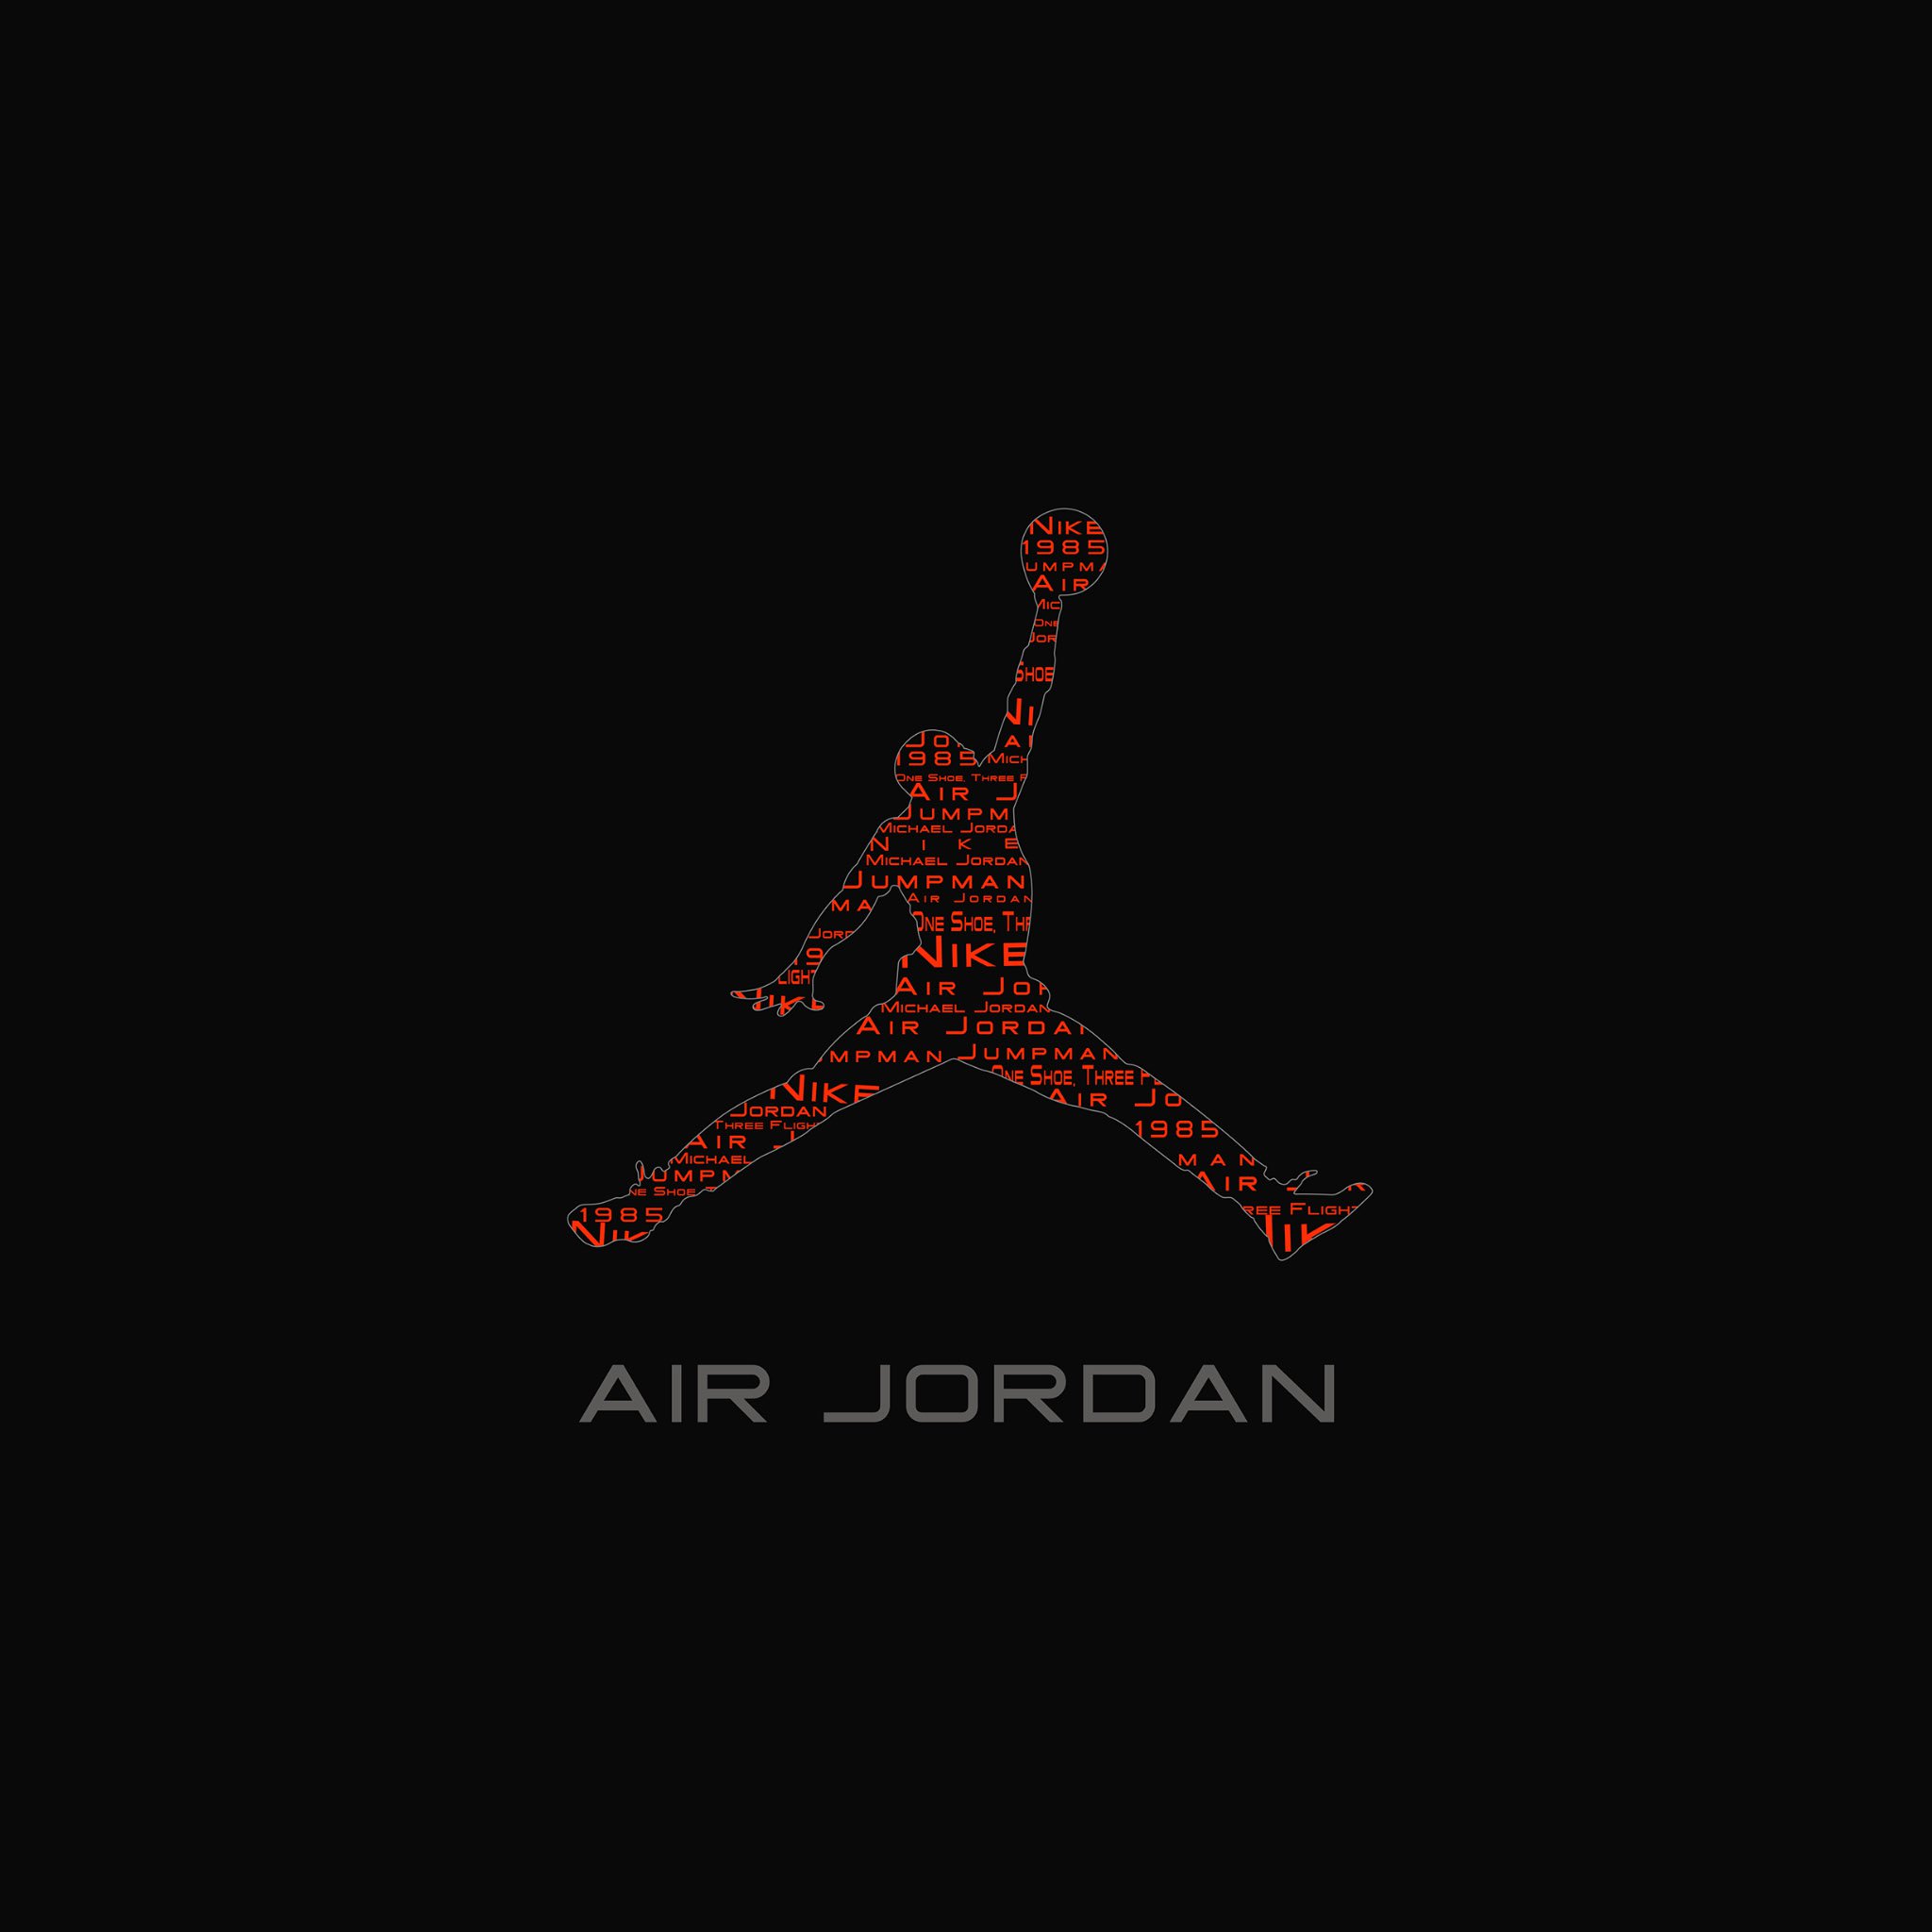 Ios7 Air Jordan Logo Parallax HD iPhone iPad Wallpaper